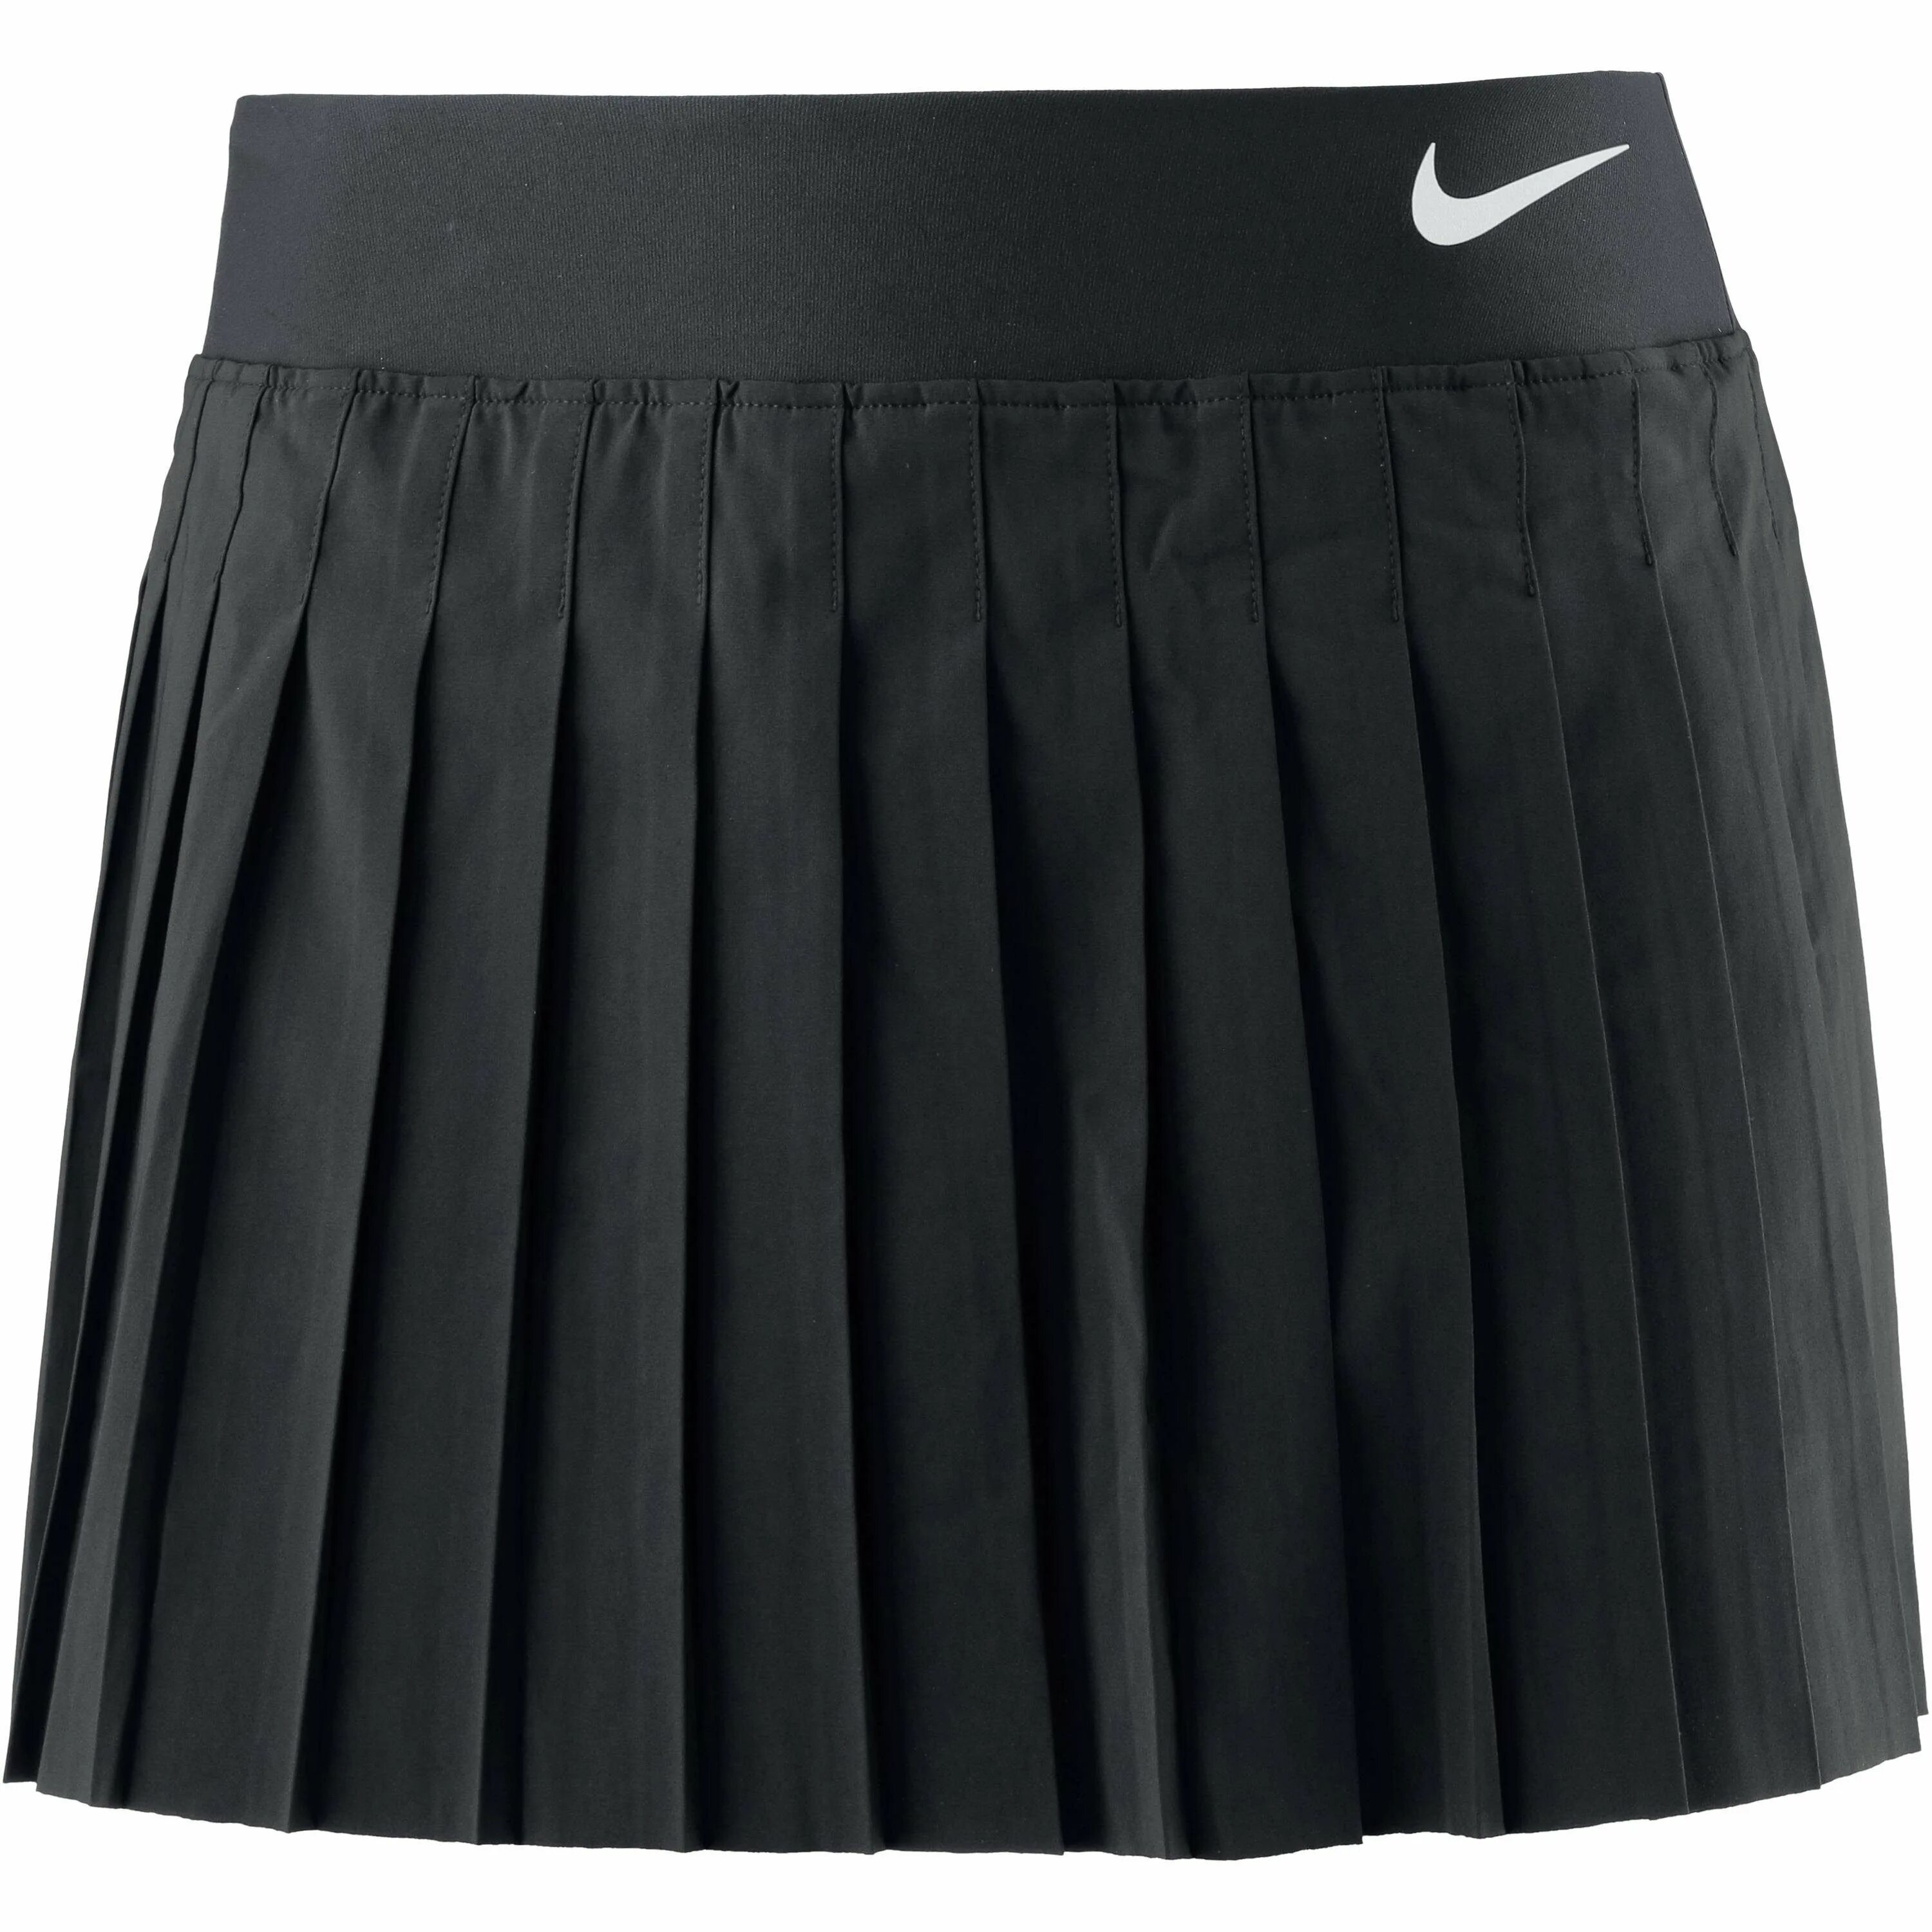 Черная юбка в школу. W6235r Black теннисная юбка Alo. Befree юбка теннисная черная. Теннисная юбка 2020 тренд. Теннисная юбка Ив сен Лоран.